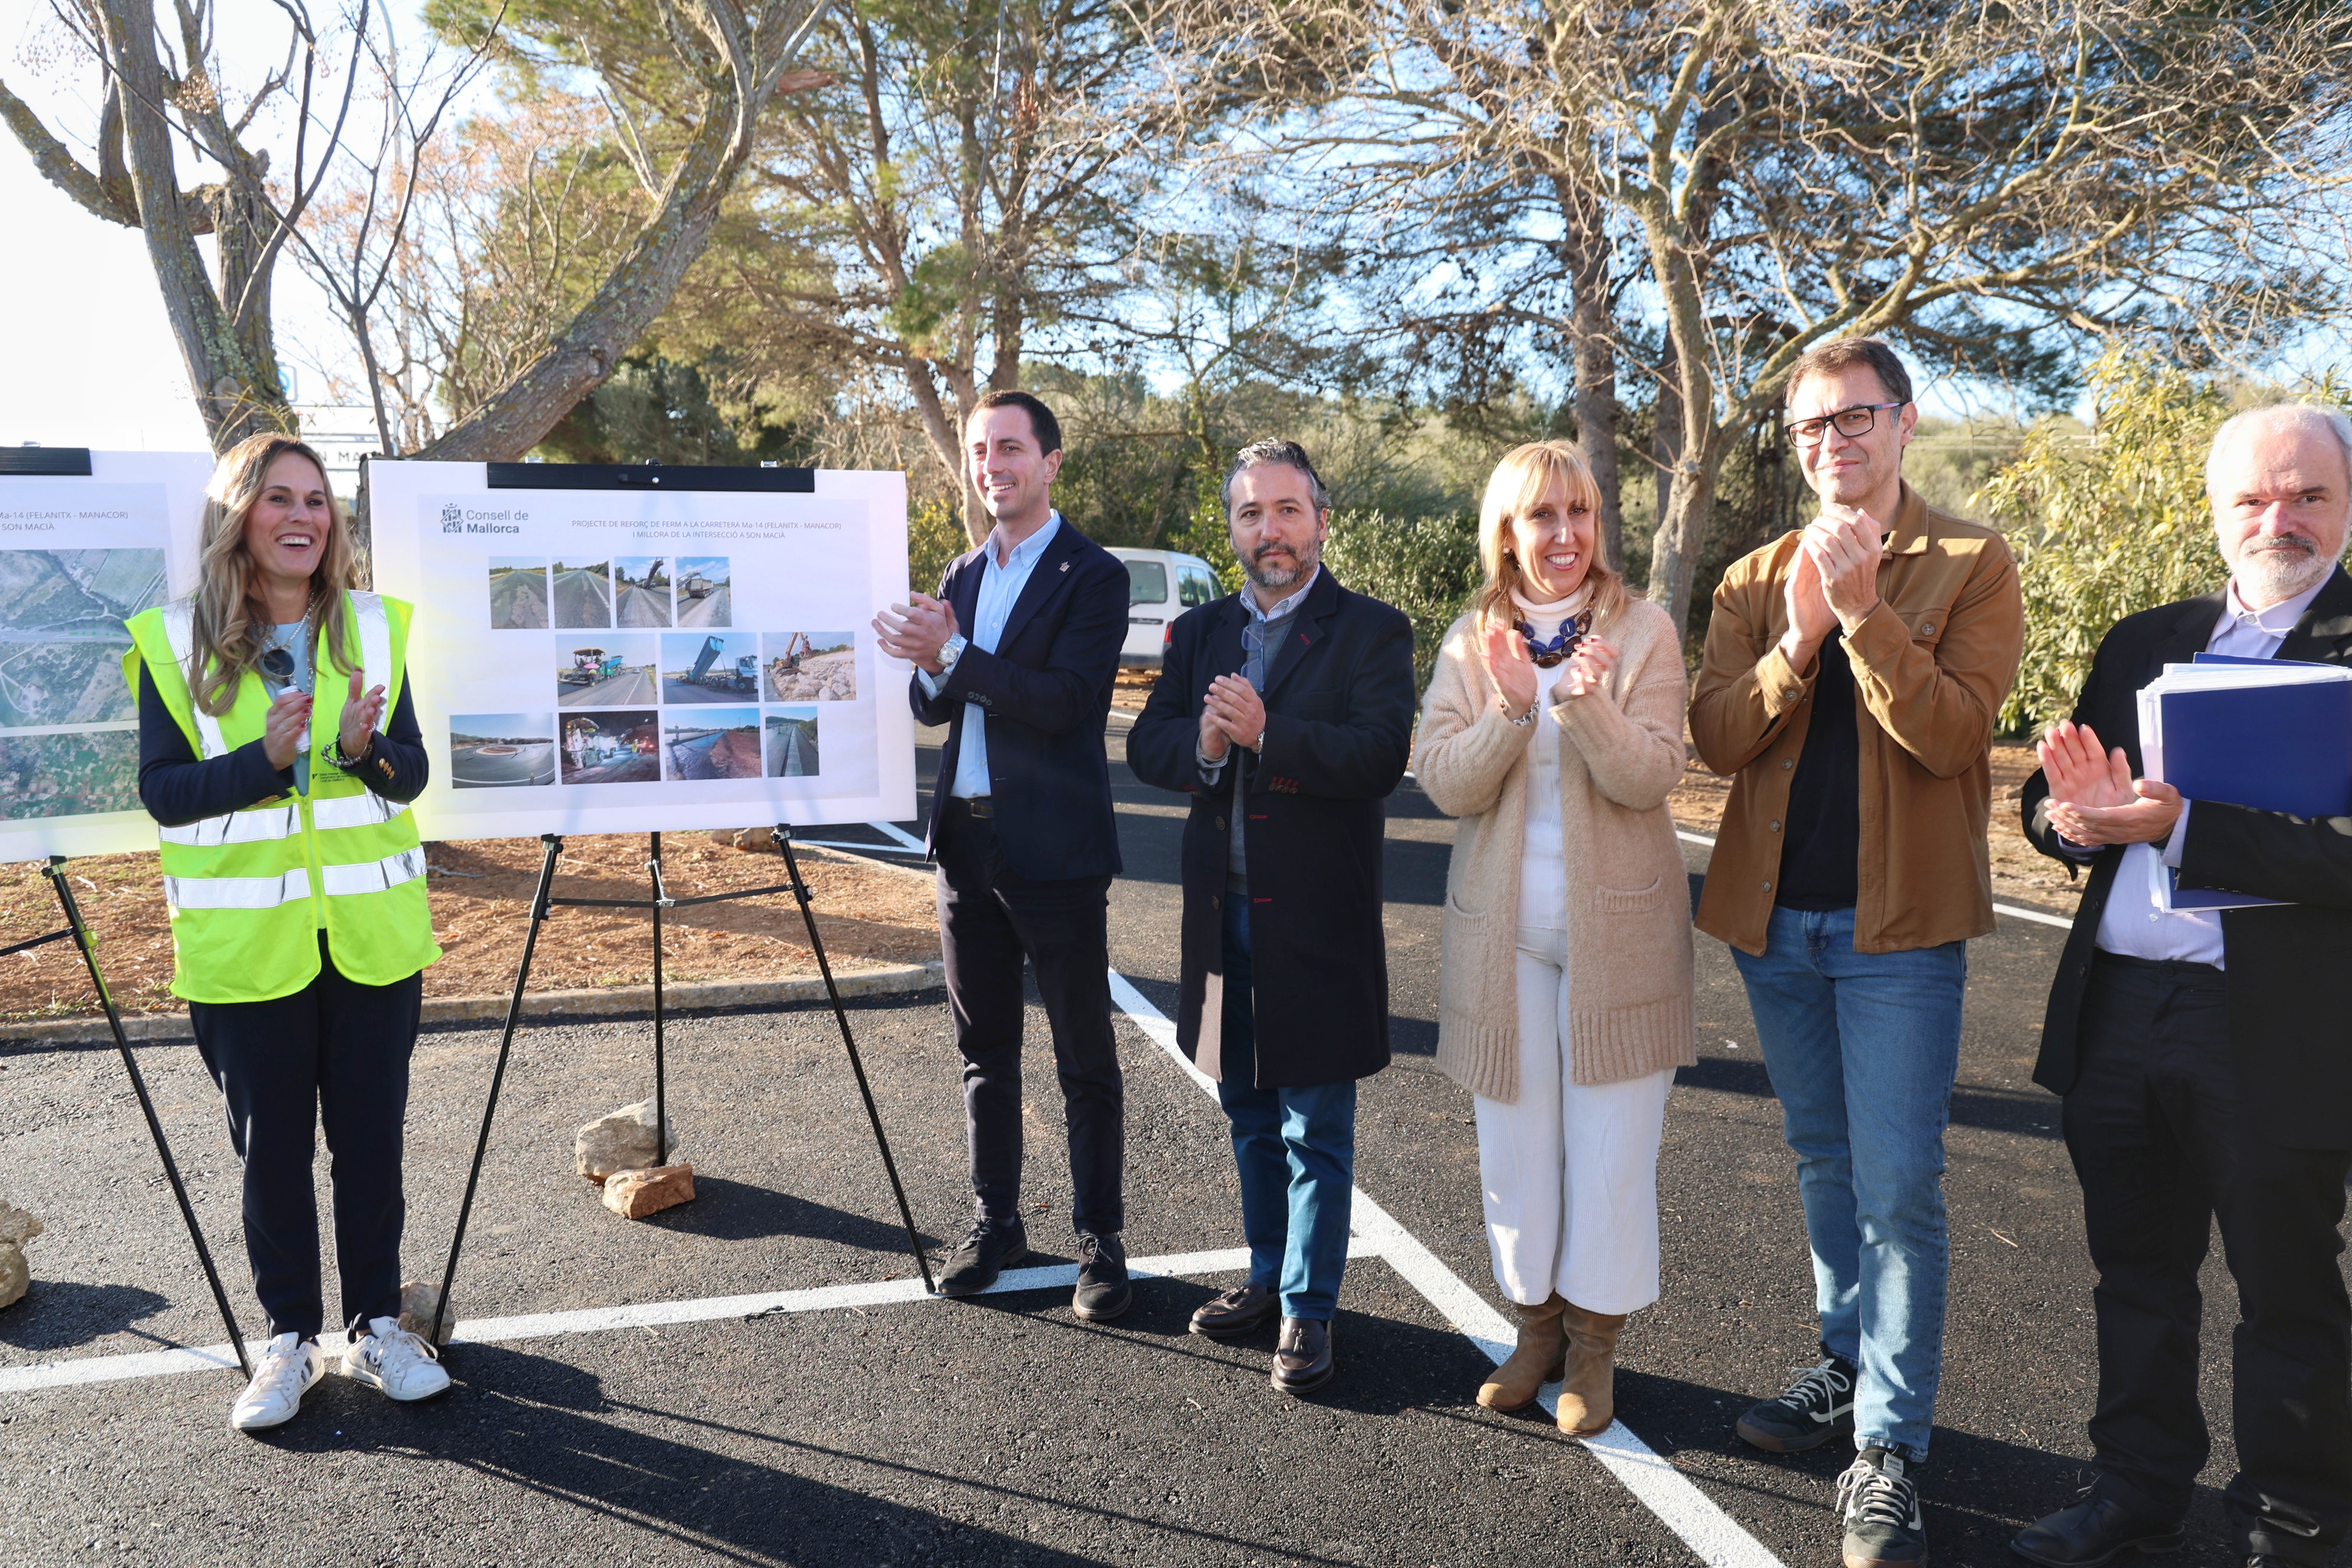 El president del Consell de Mallorca, Llorenç Galmés, inaugura les obres de remodelació de la carretera Ma-14, de Manacor a Felanitx.